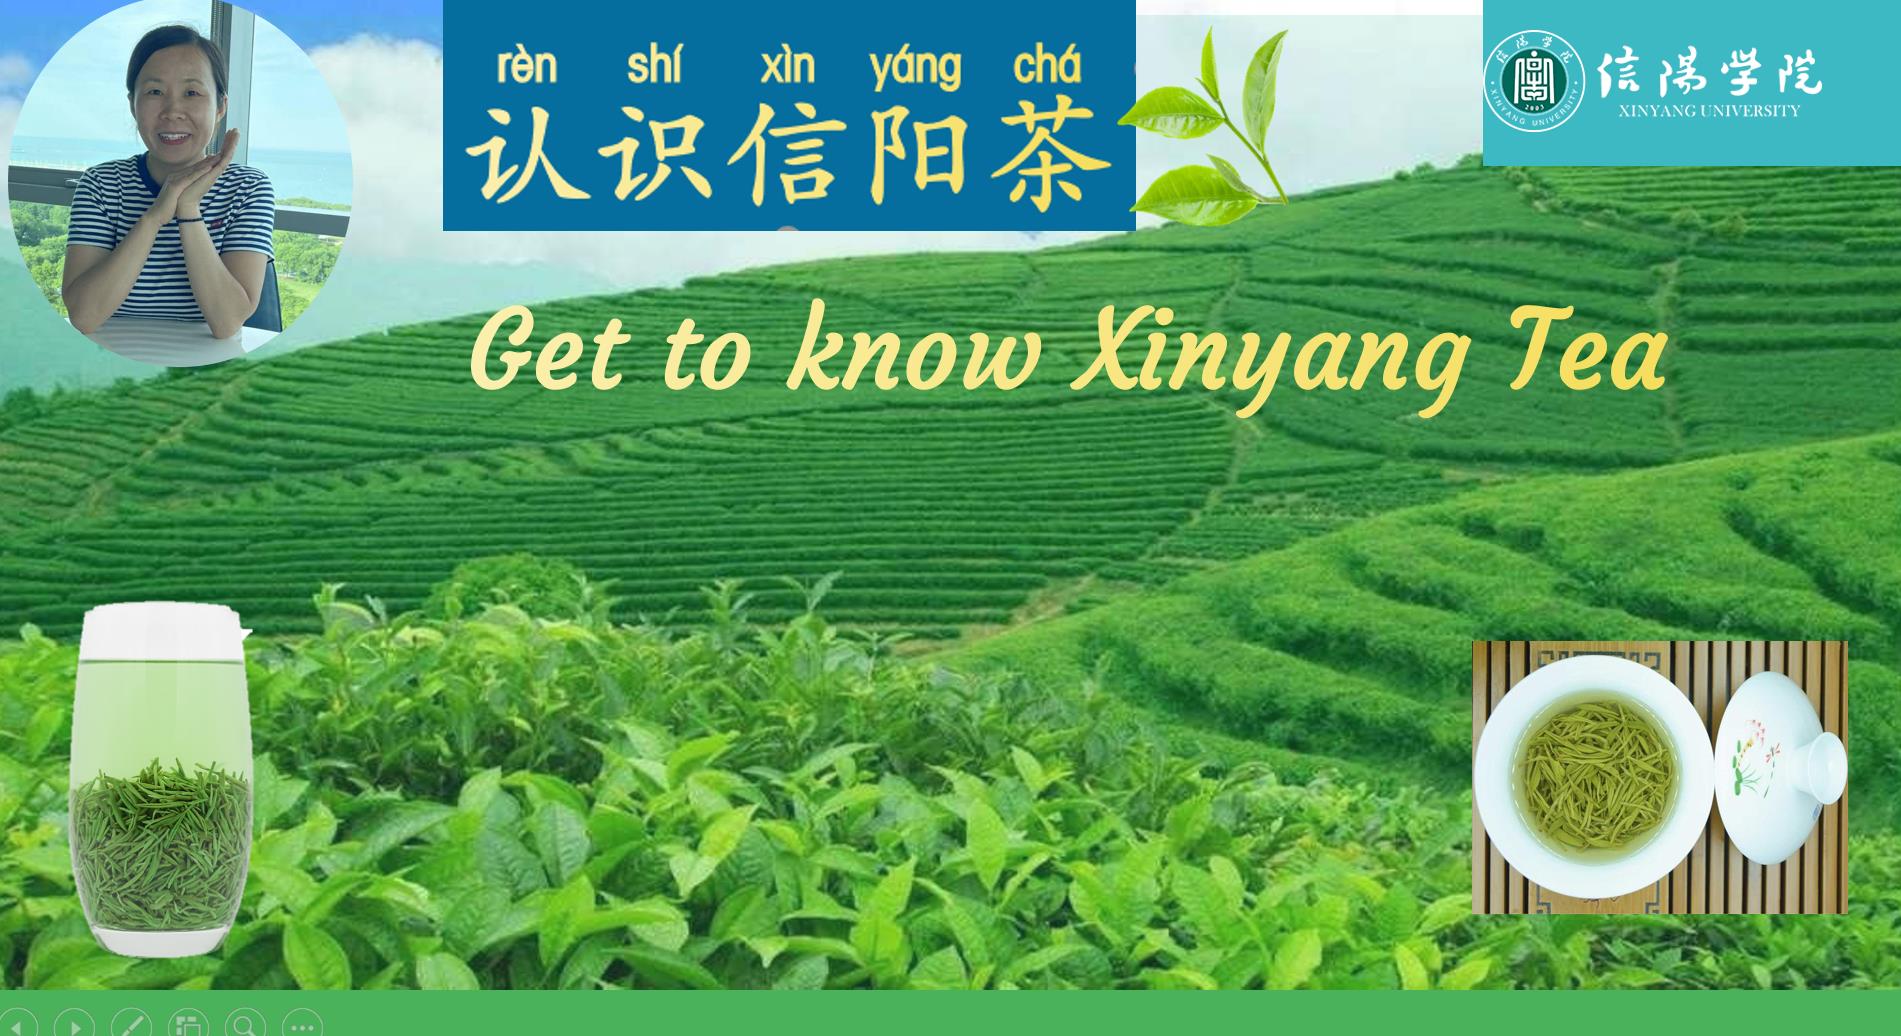 Get to know Xinyang Tea